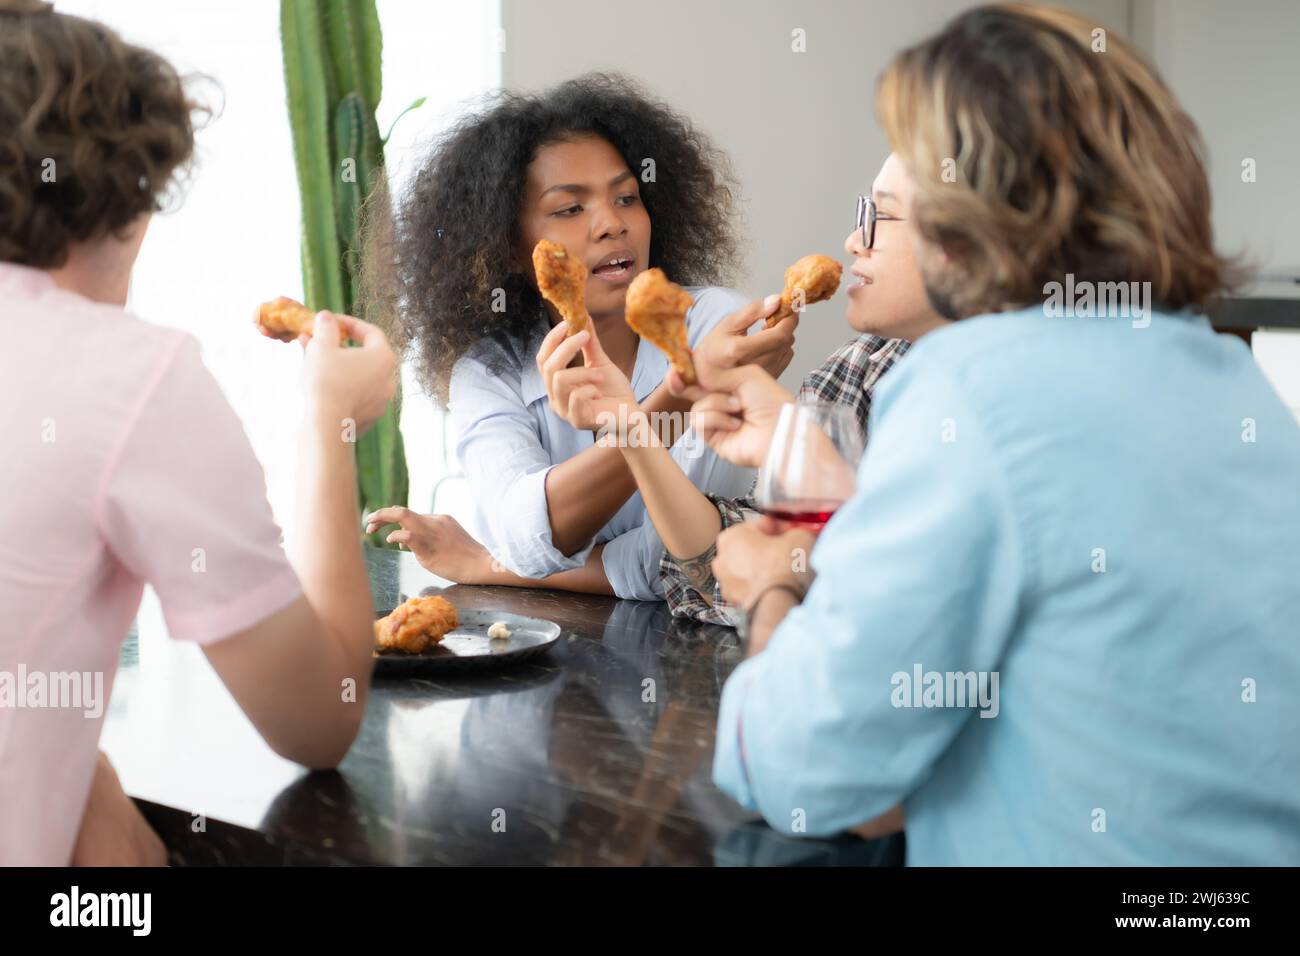 Groupe de jeunes amis mangeant de la restauration rapide à la maison. Groupe multiethnique de personnes déjeunant ensemble. Concept de communication Banque D'Images